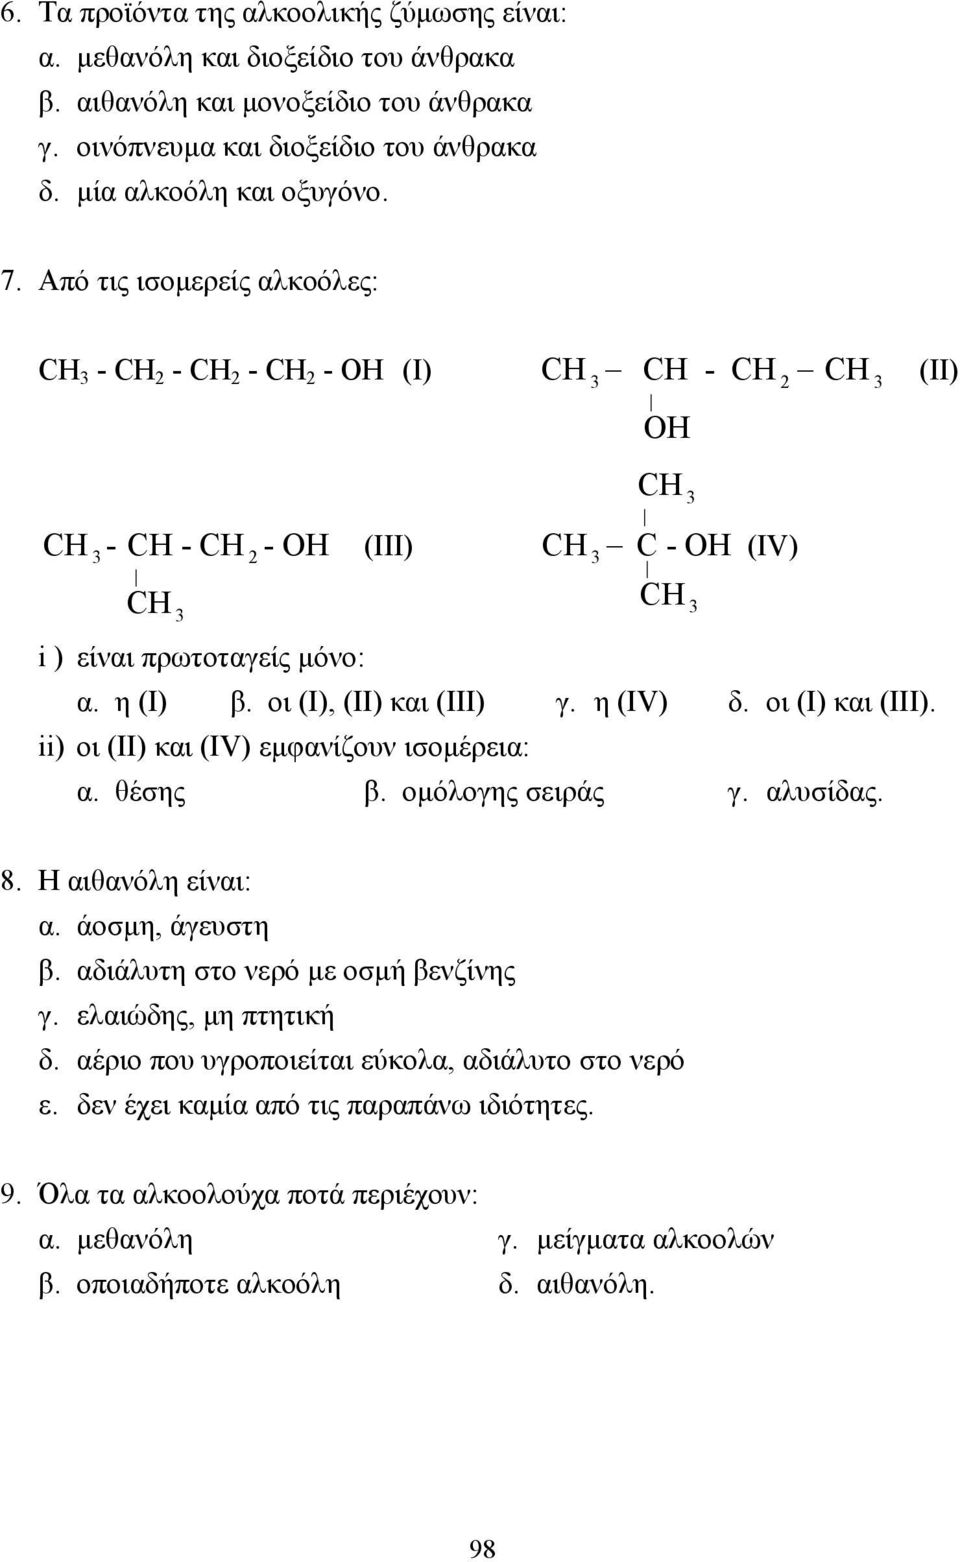 η (IV) δ. οι (Ι) και (ΙΙΙ). ii) οι (ΙΙ) και (IV) εµφανίζουν ισοµέρεια: α. θέσης β. οµόλογης σειράς γ. αλυσίδας. (II) 8. Η αιθανόλη είναι: α. άοσµη, άγευστη β. αδιάλυτη στο νερό µε οσµή βενζίνης γ.